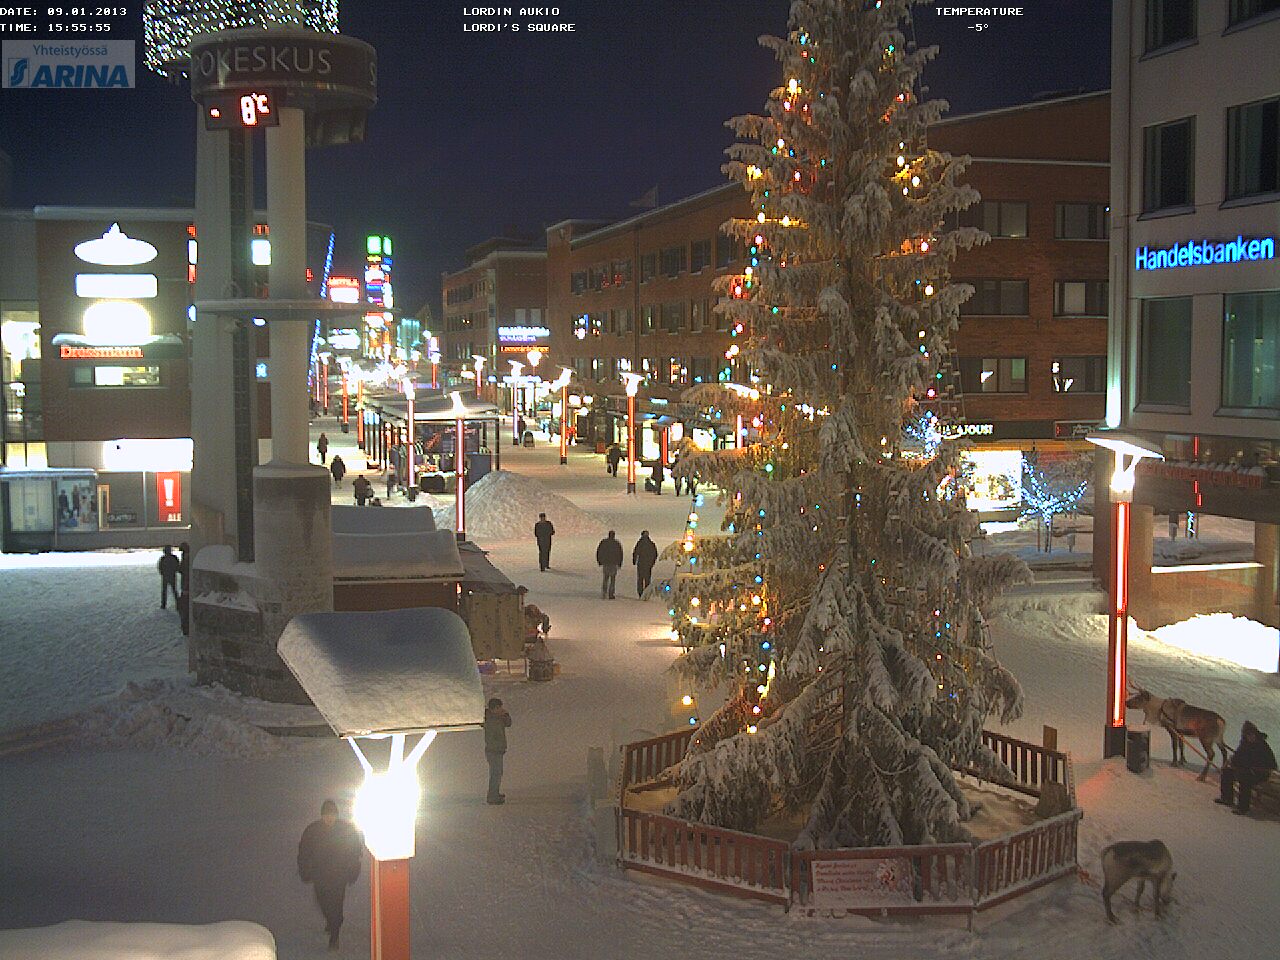 Babbo Natale Webcam.Lo Spettacolo Di Rovaniemi In Inverno Gelo E Neve Le Immagini In Diretta Dalle Webcam Meteo Web